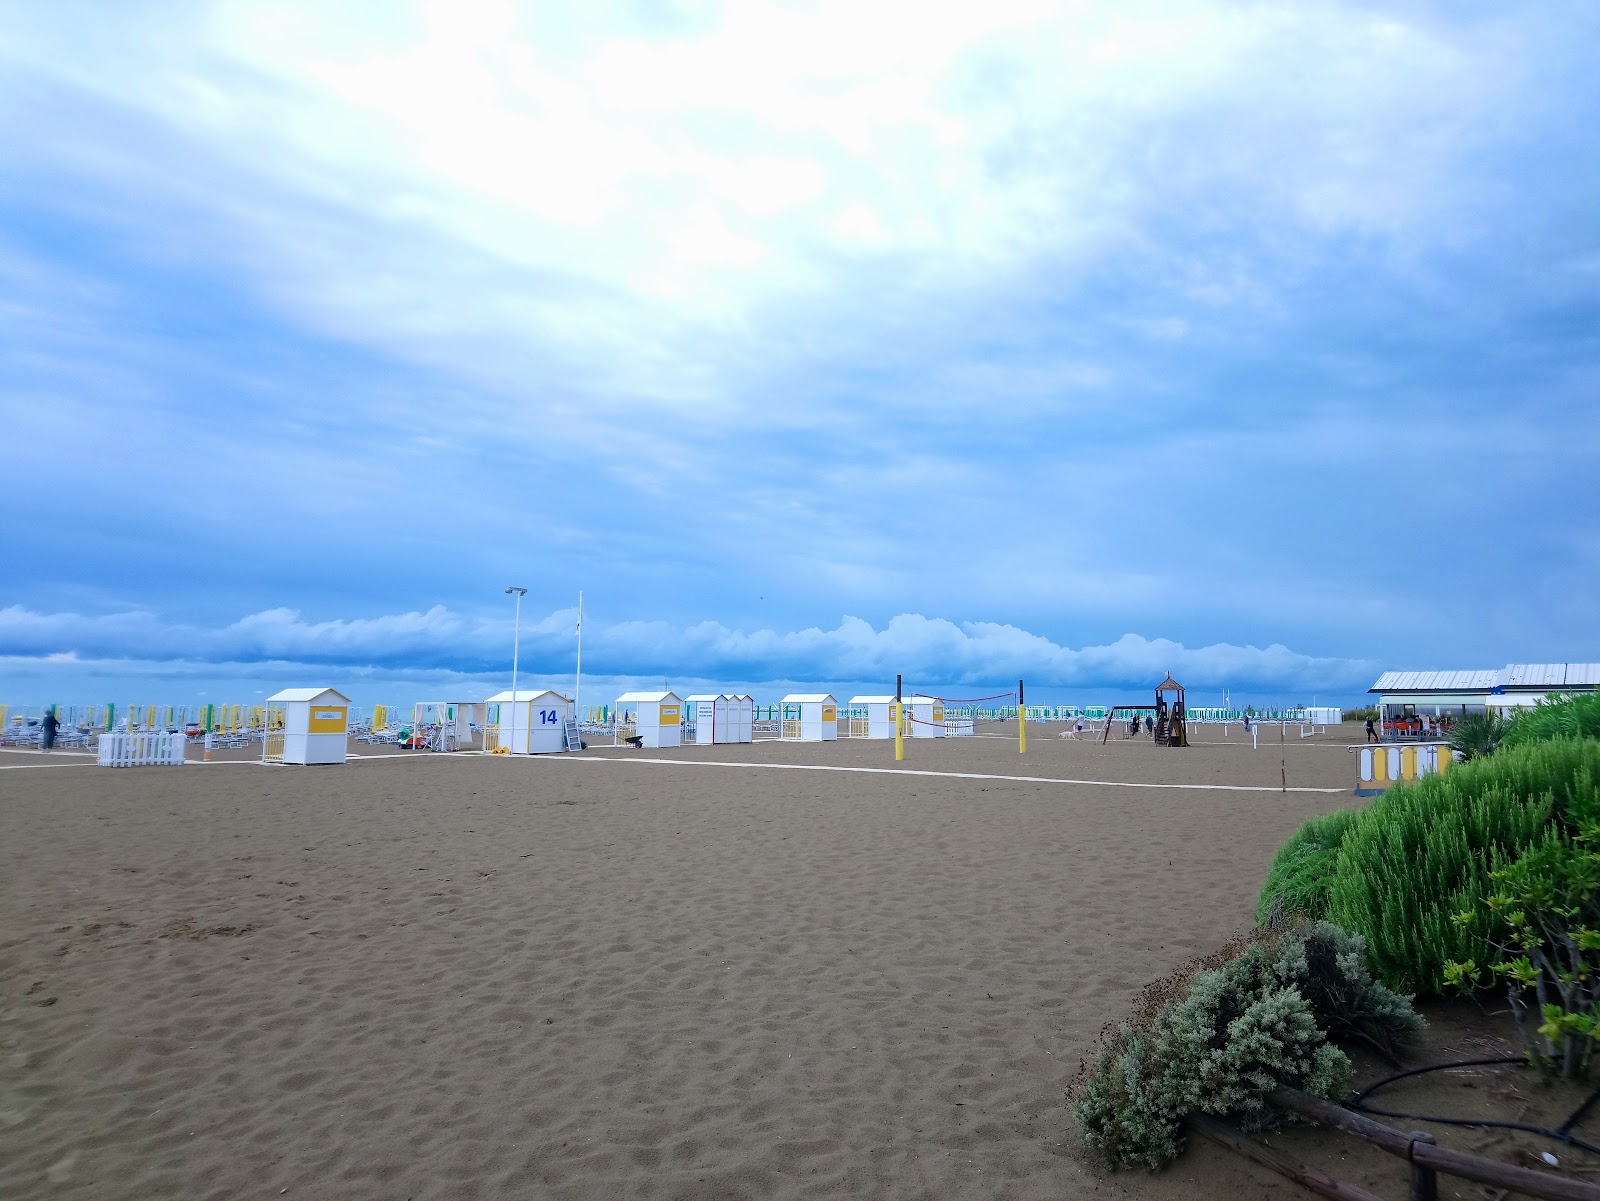 Spiaggia di Caorle'in fotoğrafı parlak kum yüzey ile